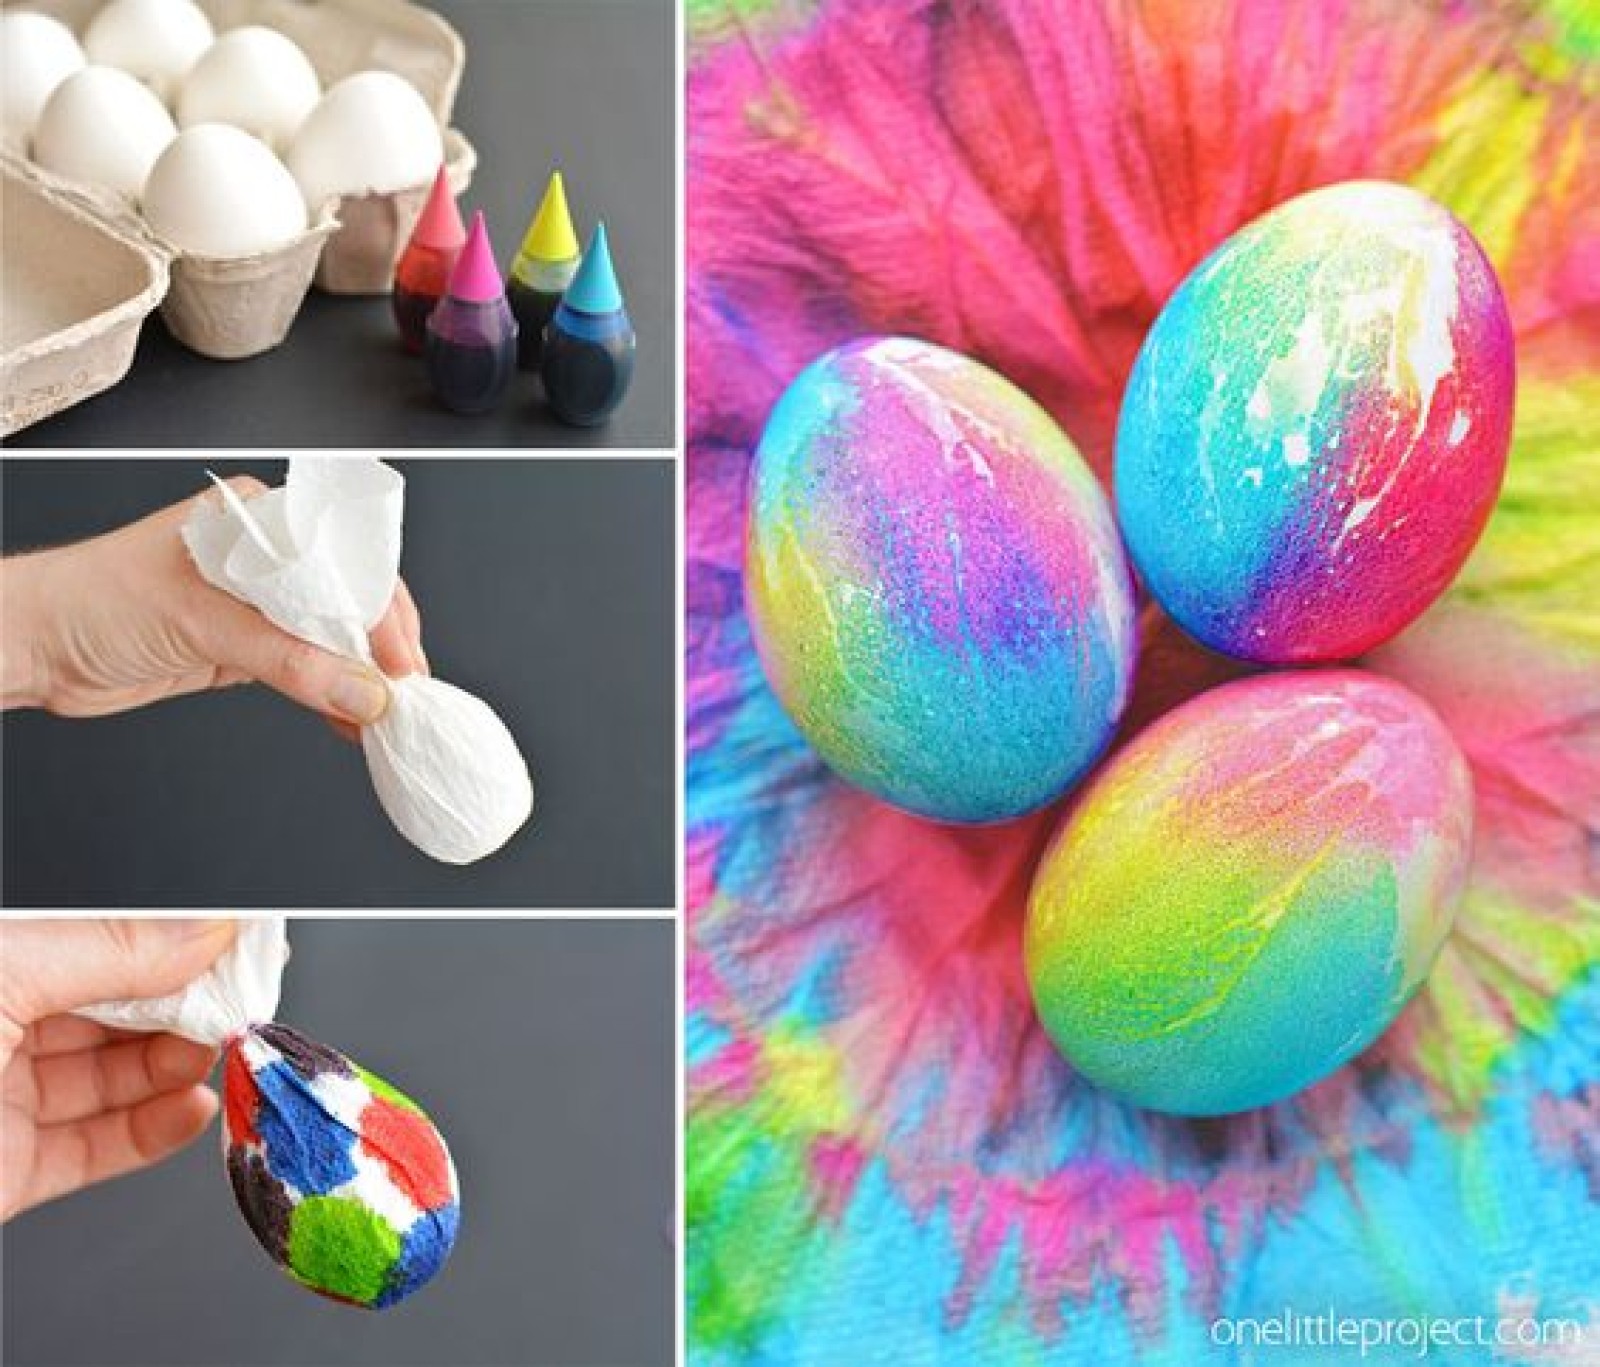 Красить украсить. Покрасить яйца на Пасху. Красим яйца на Пасху. Пасхальные яйца способы окрашивания. Оригинальный способ покраски яиц.